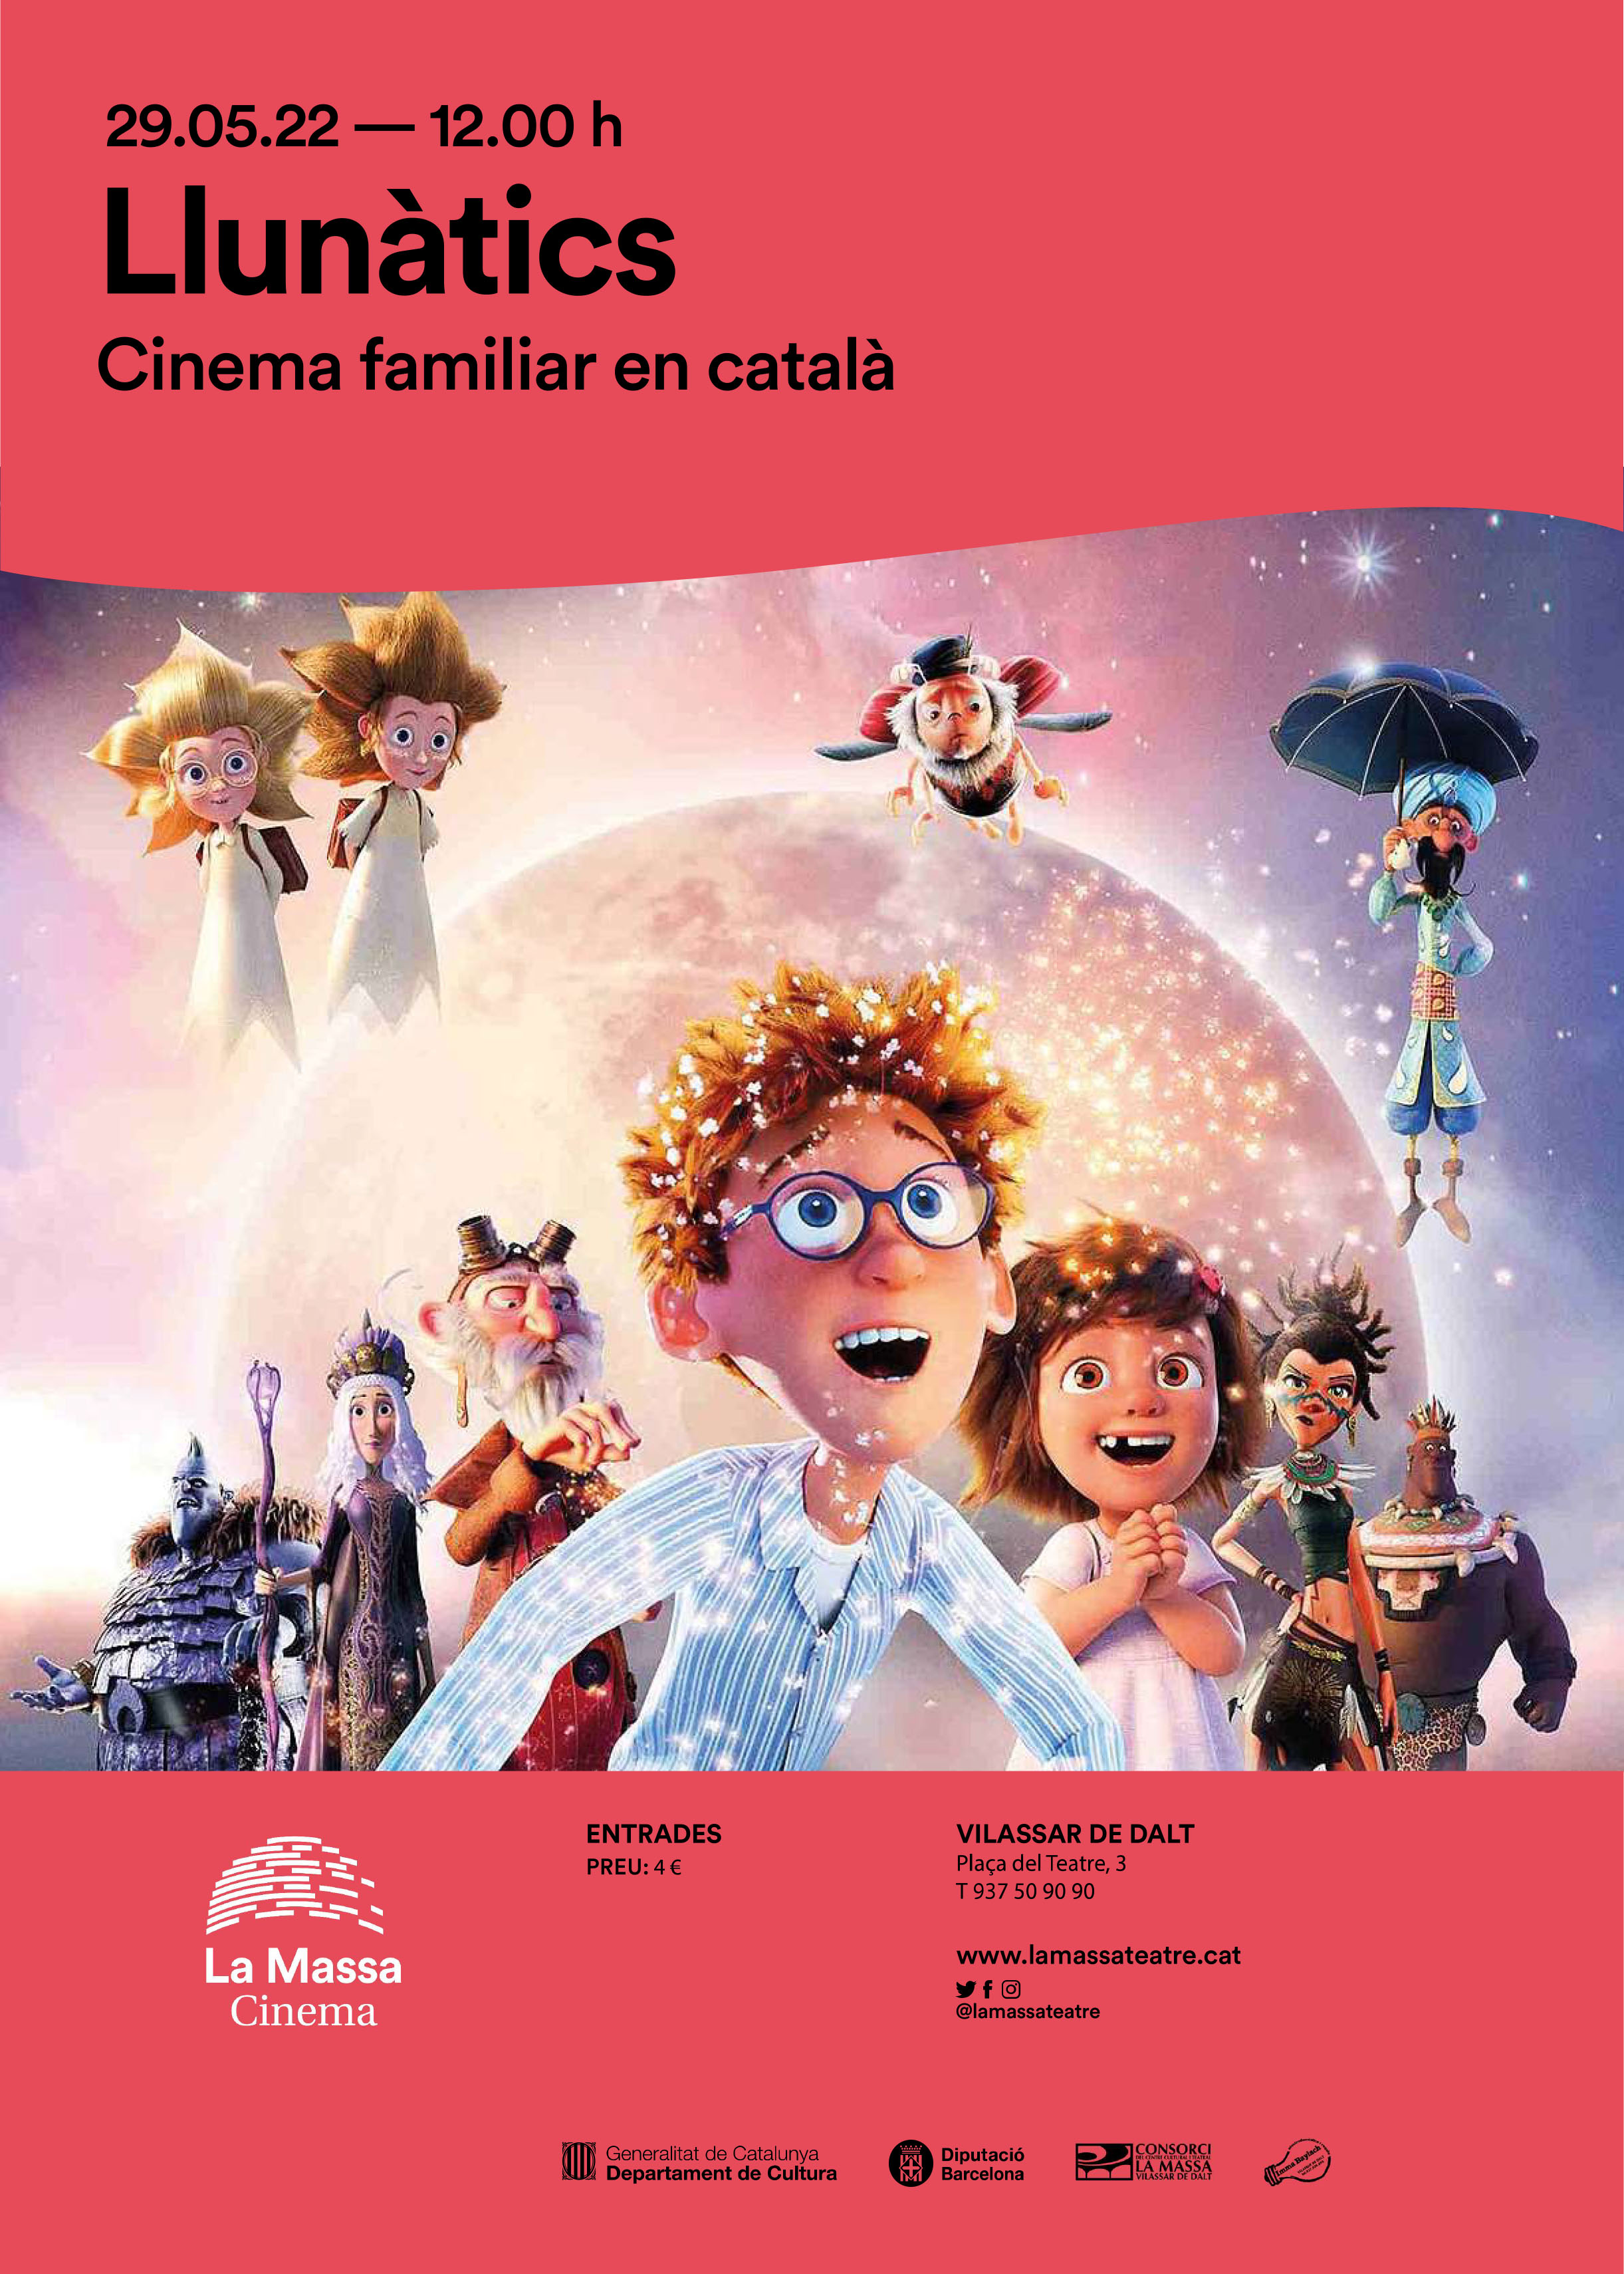 Cinema familiar en català: Llunàtics